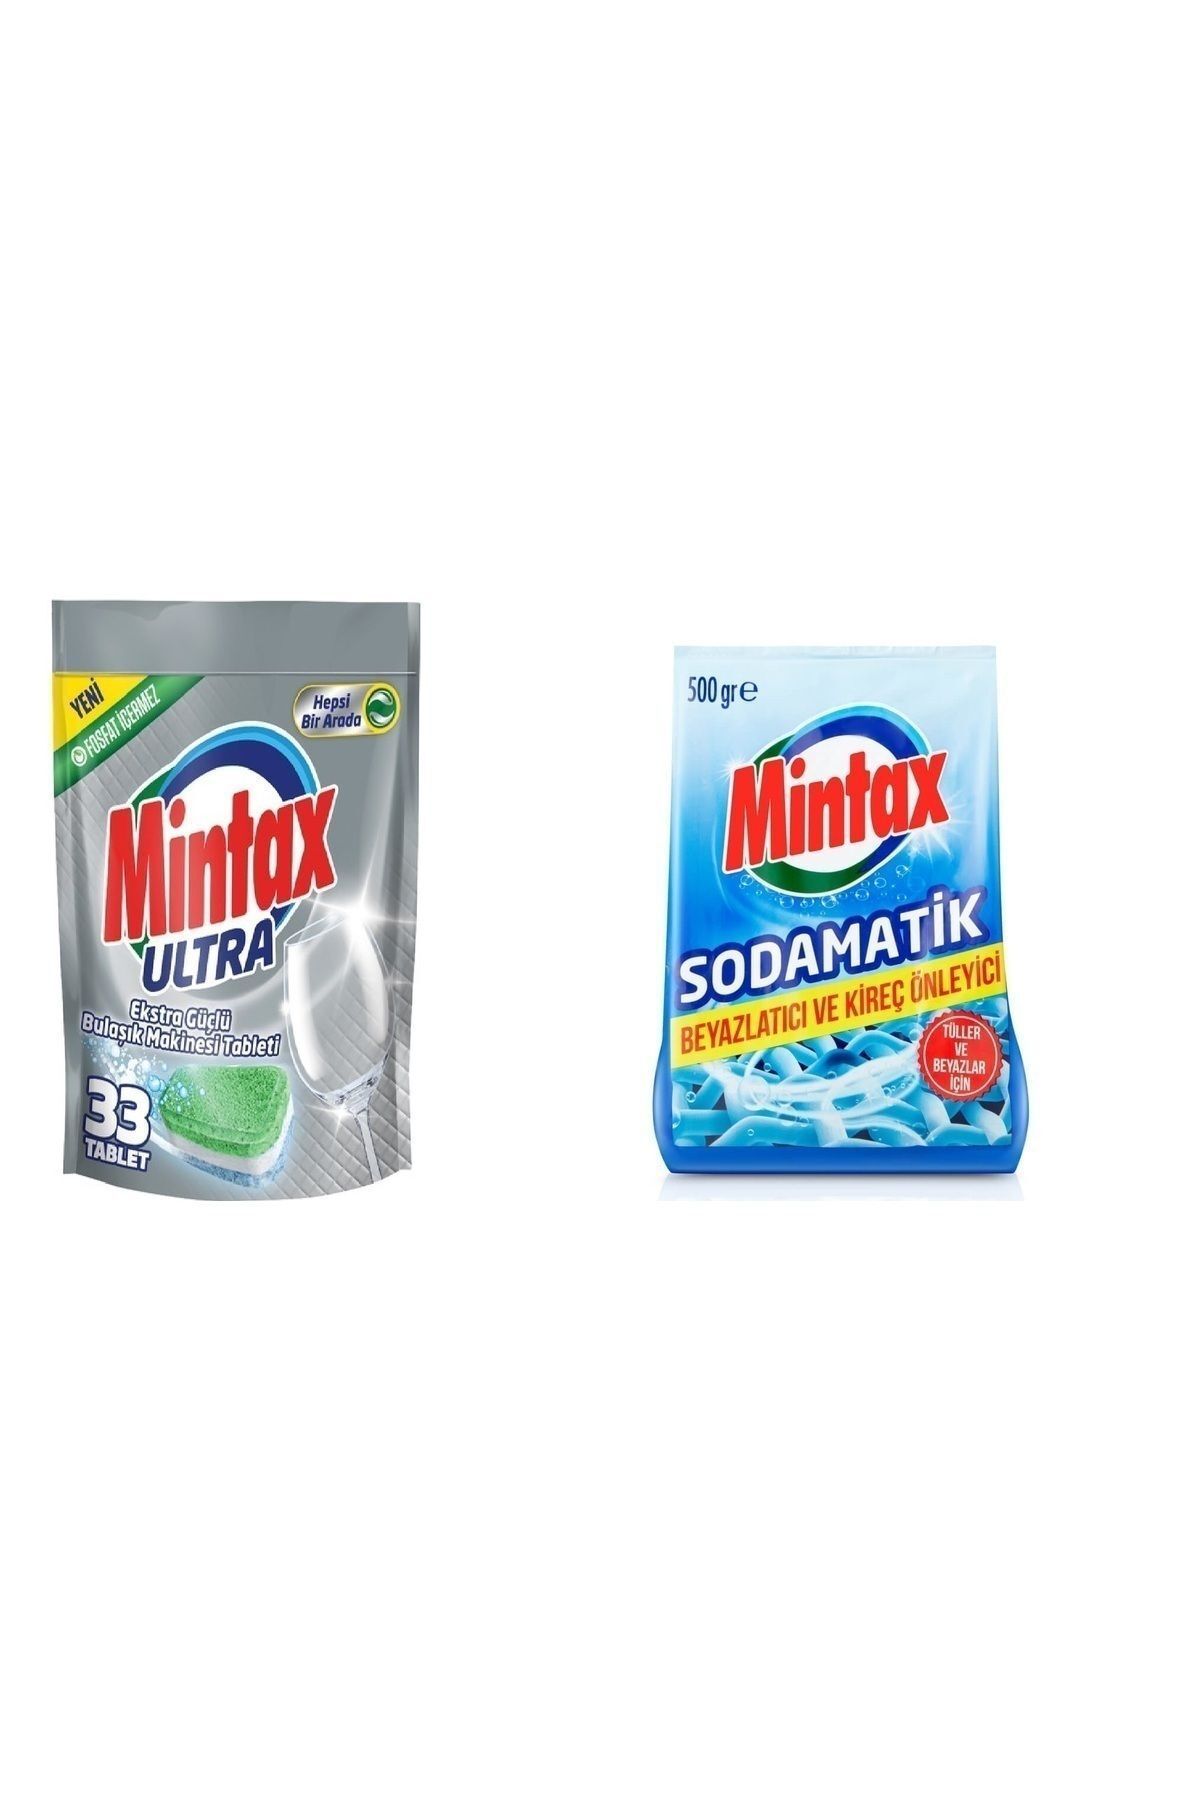 Mintax Ultra Bulaşık Makinesi Tableti 33'lü + Mintax Soda Matik